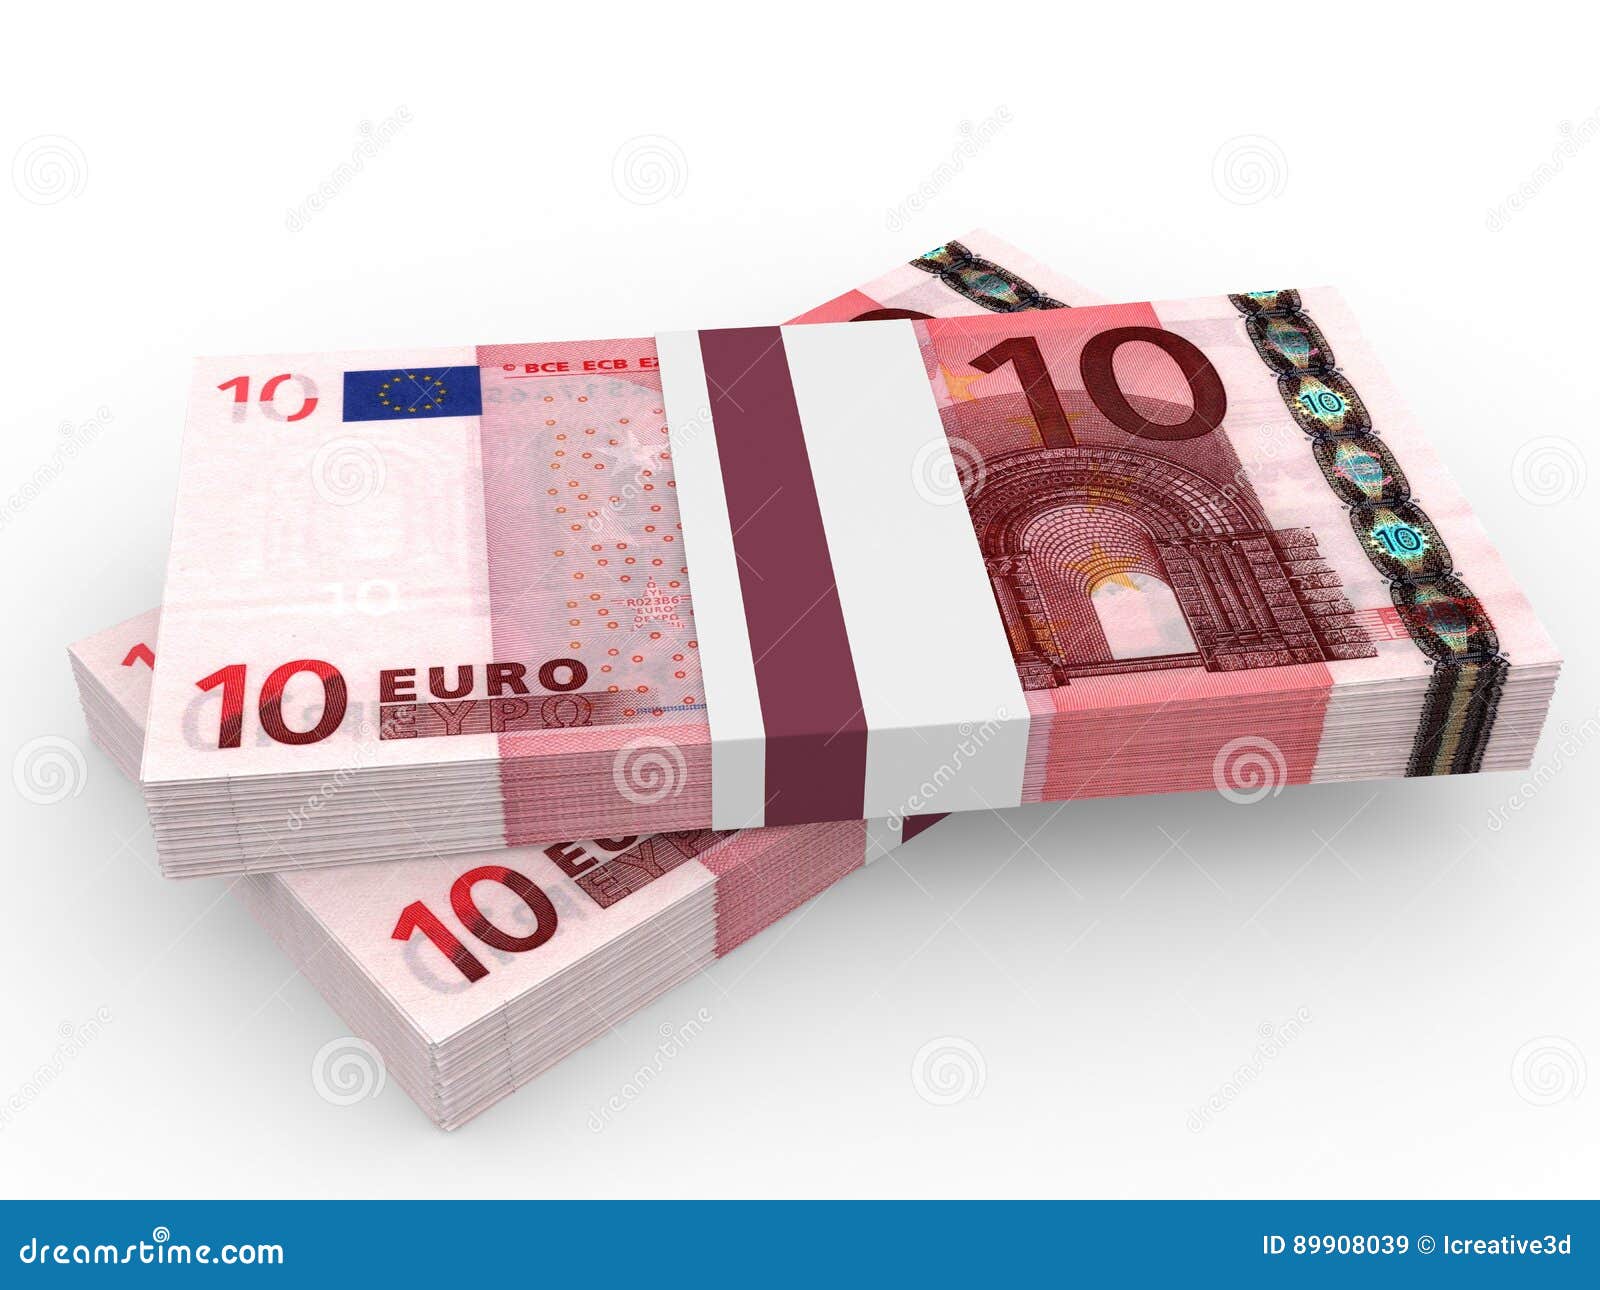 evalueren Marine Trouwens Stapels van Geld Tien Euro stock illustratie. Illustration of overvloed -  89908039